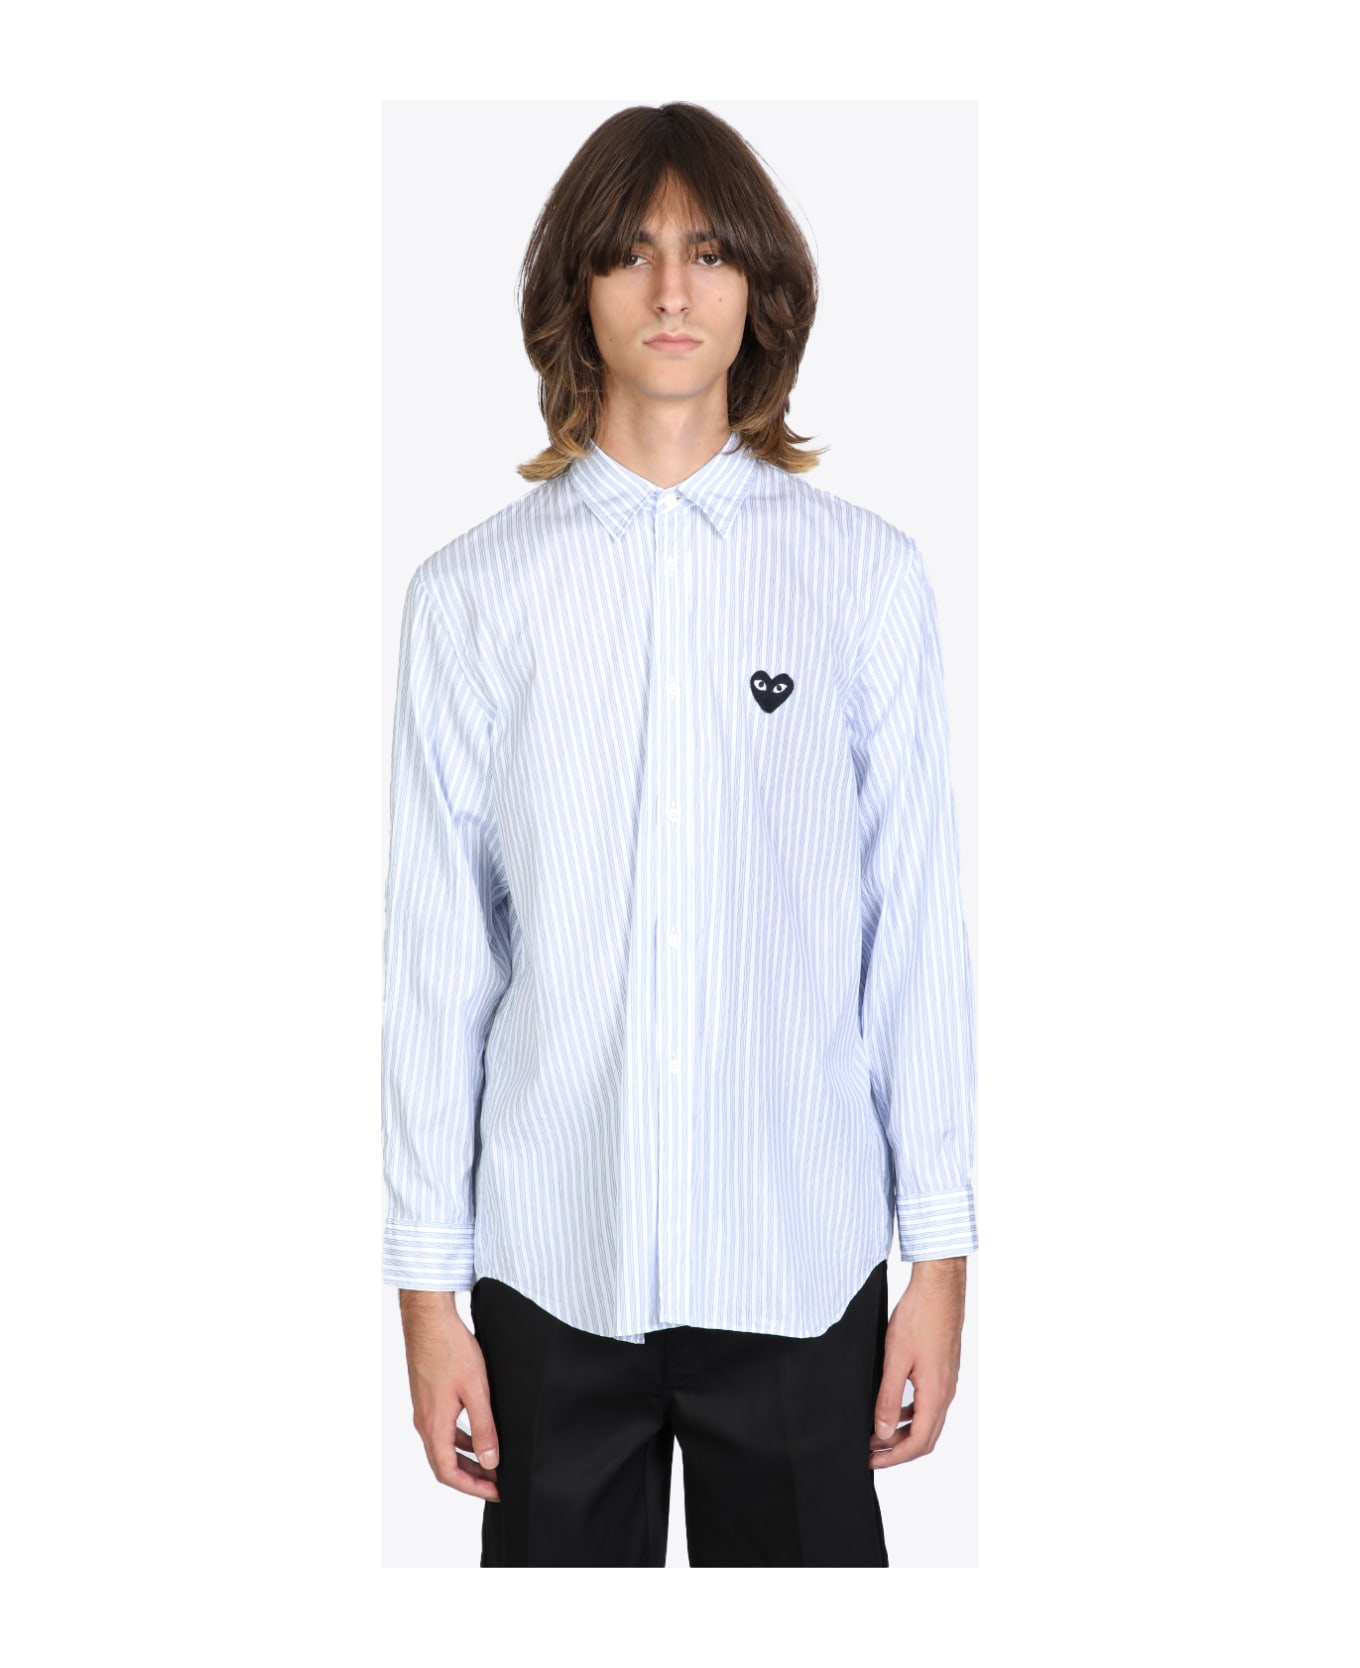 Comme des Garçons Play Mens Shirt Light blue and white striped shirt. - Bianco/celeste